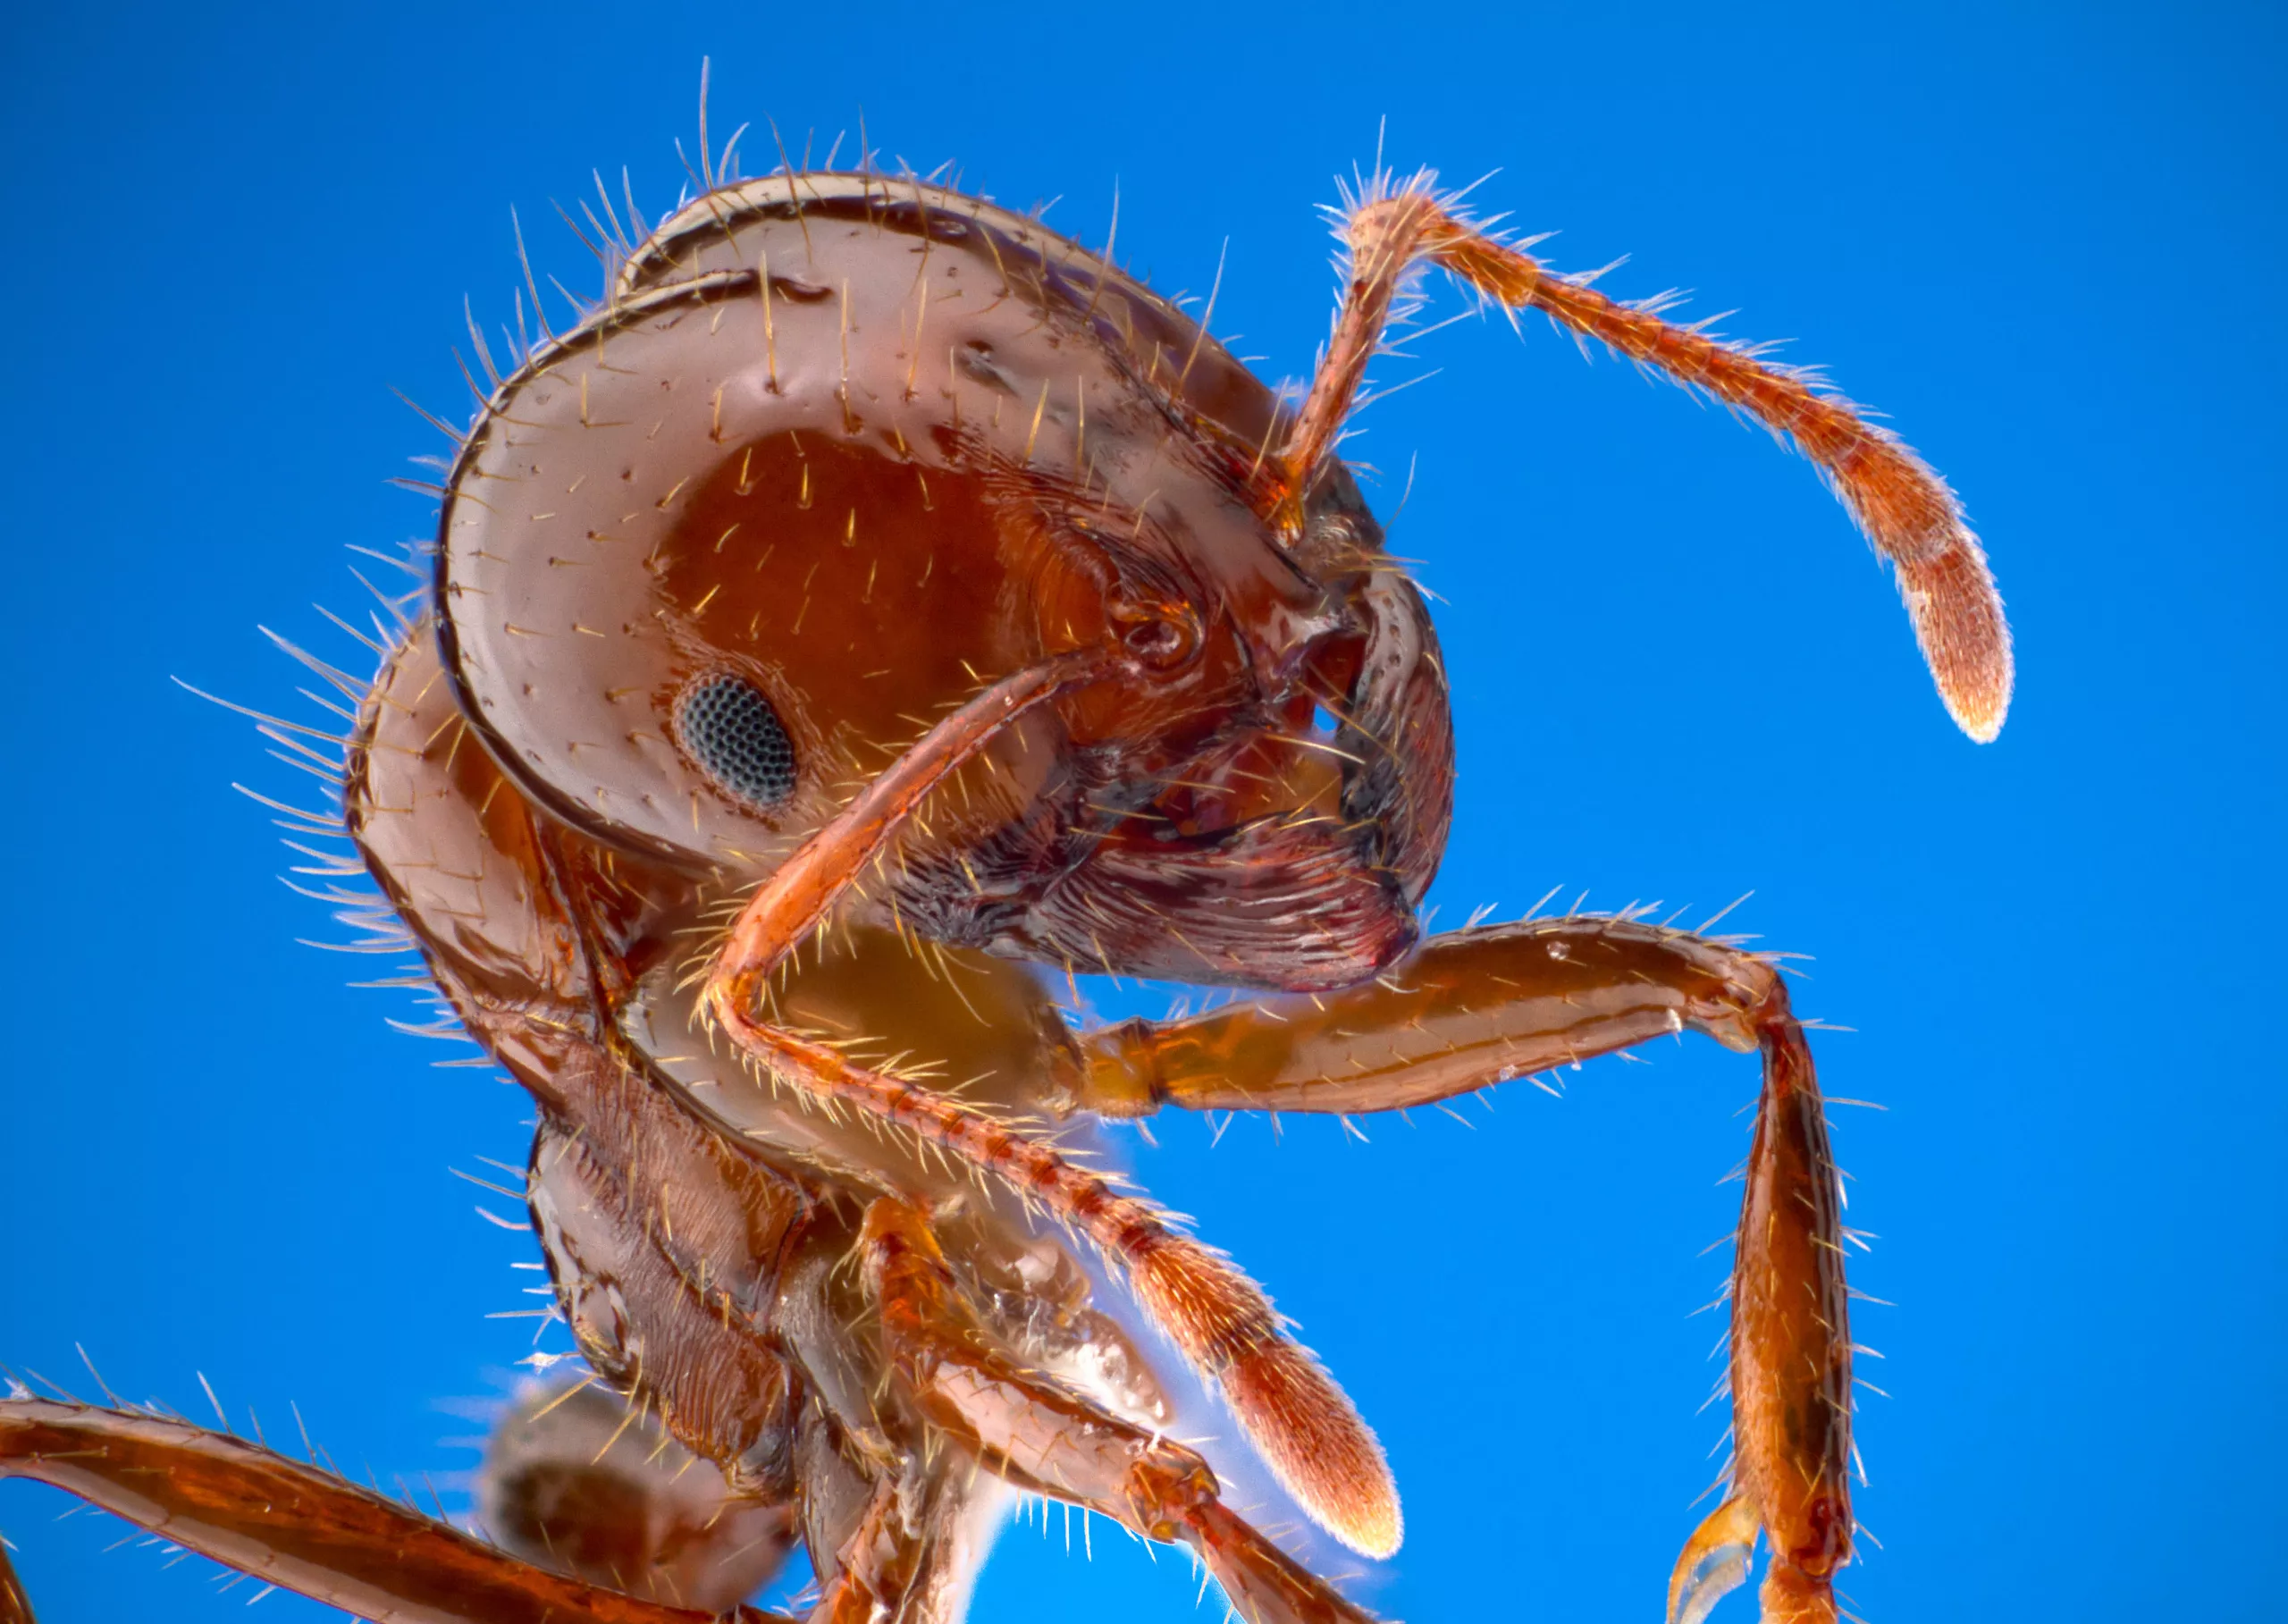 Las hormigas de fuego hacen honor a su nombre al invadir la PC y comer pasta térmica, elevando la temperatura del sistema